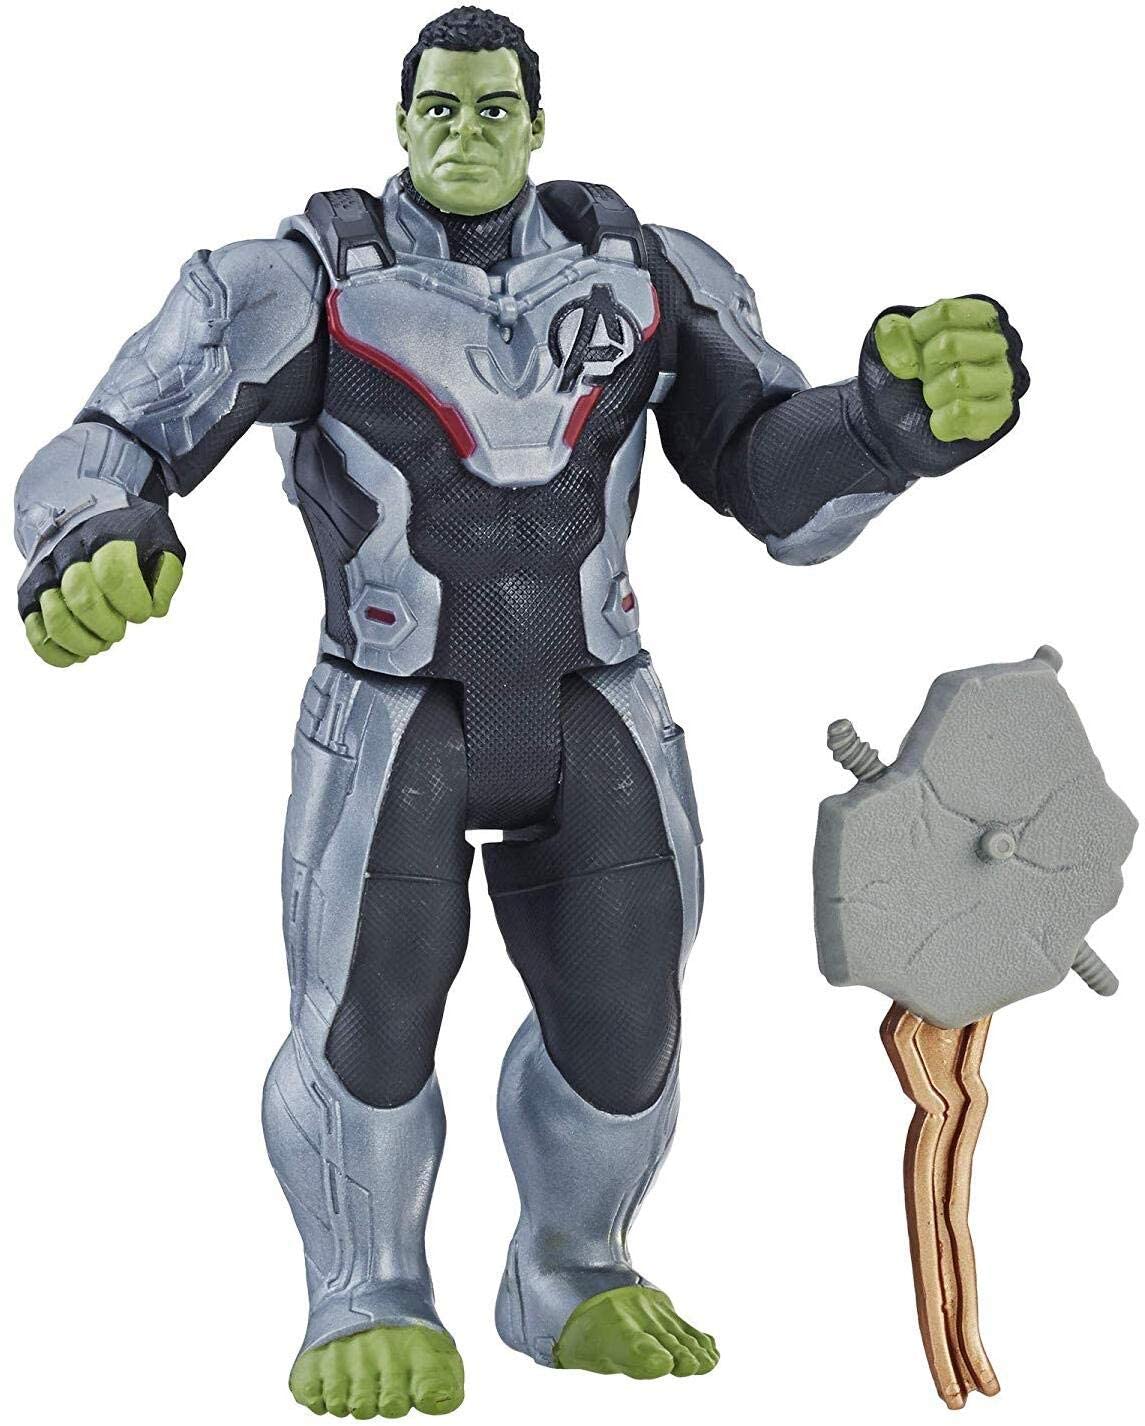 avengers hulk toy, hulk toy for kids, hulk soft toy